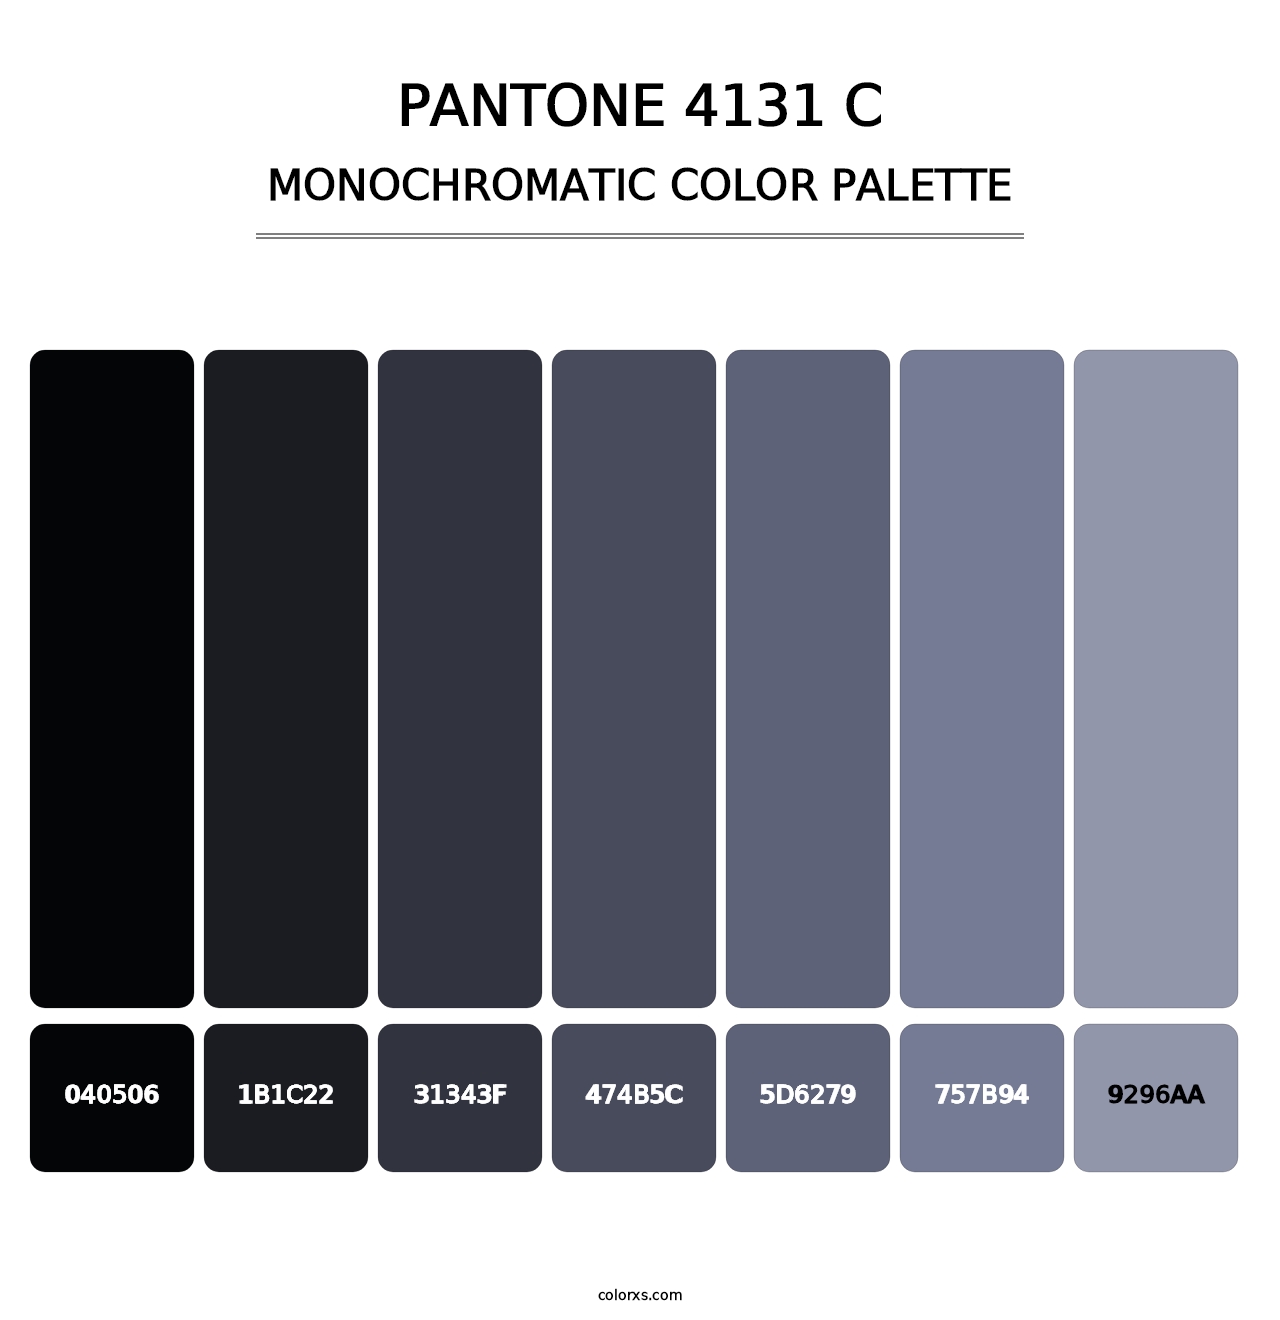 PANTONE 4131 C - Monochromatic Color Palette